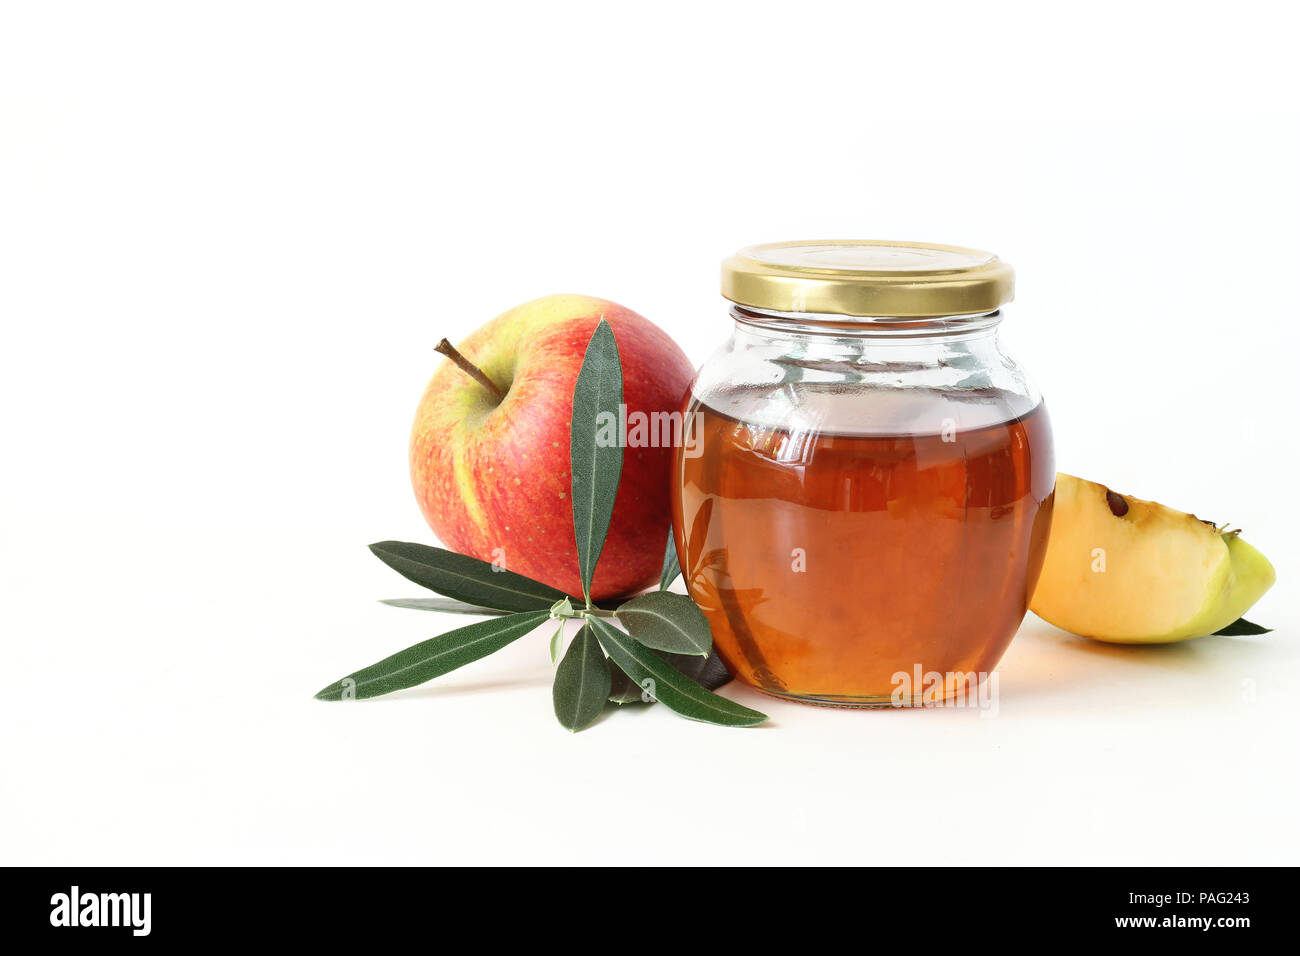 Rosh Hashana, das Jüdische Neue Jahr Grußkarte, Einladung. Traditionelle Speisen Stilleben Komposition mit Honigtopf, Apfel Obst und Olive Branch auf weißem Hintergrund. Stockfoto